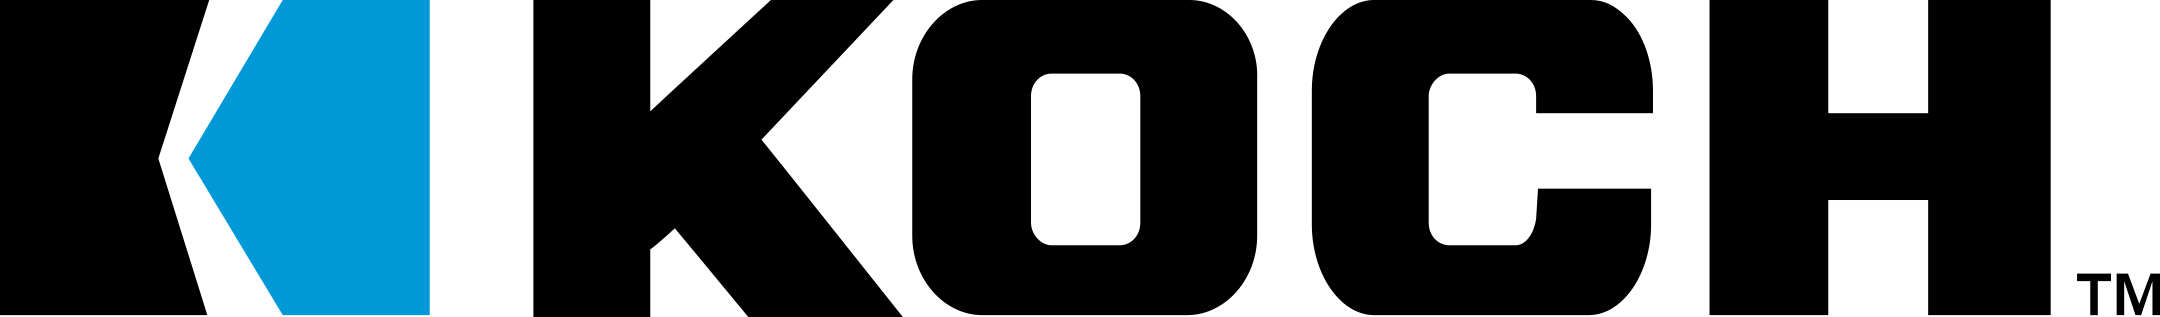 koch logo 1 - Koch Industries Logo